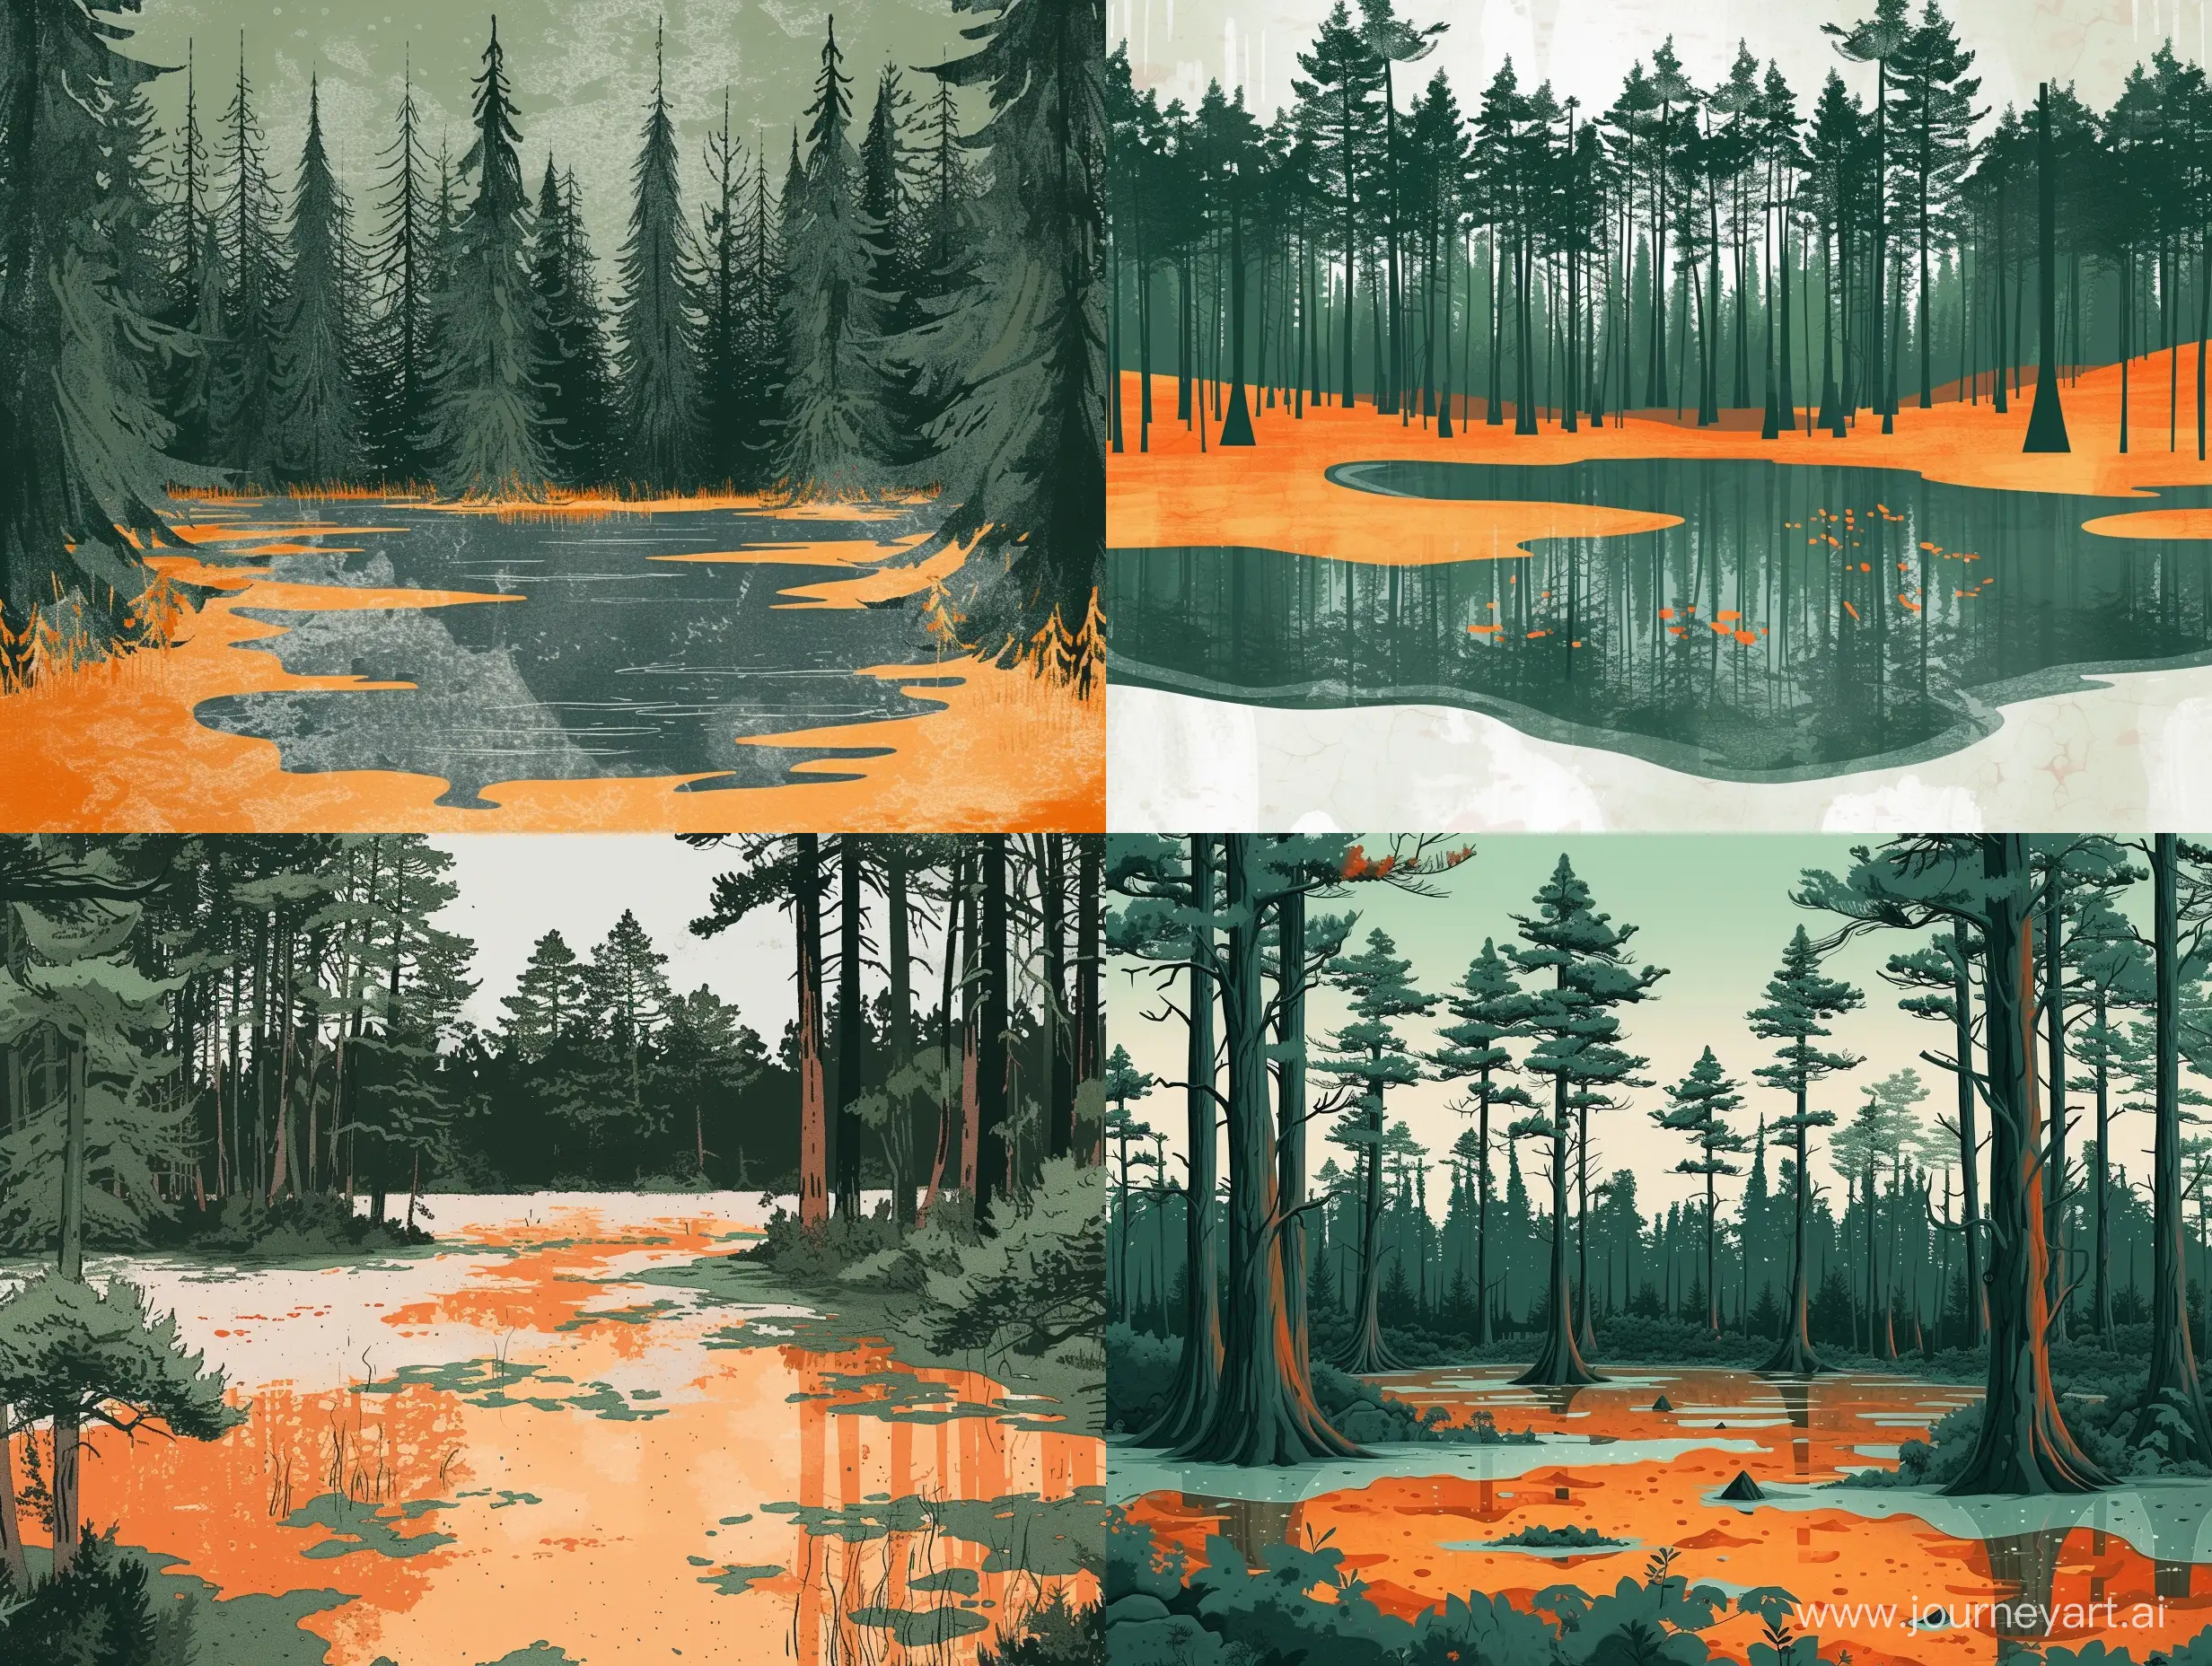 Enchanting-Pine-Forest-Swamp-Vintage-Illustrated-Landscape-in-Salt-Dark-Green-and-Orange-Hues